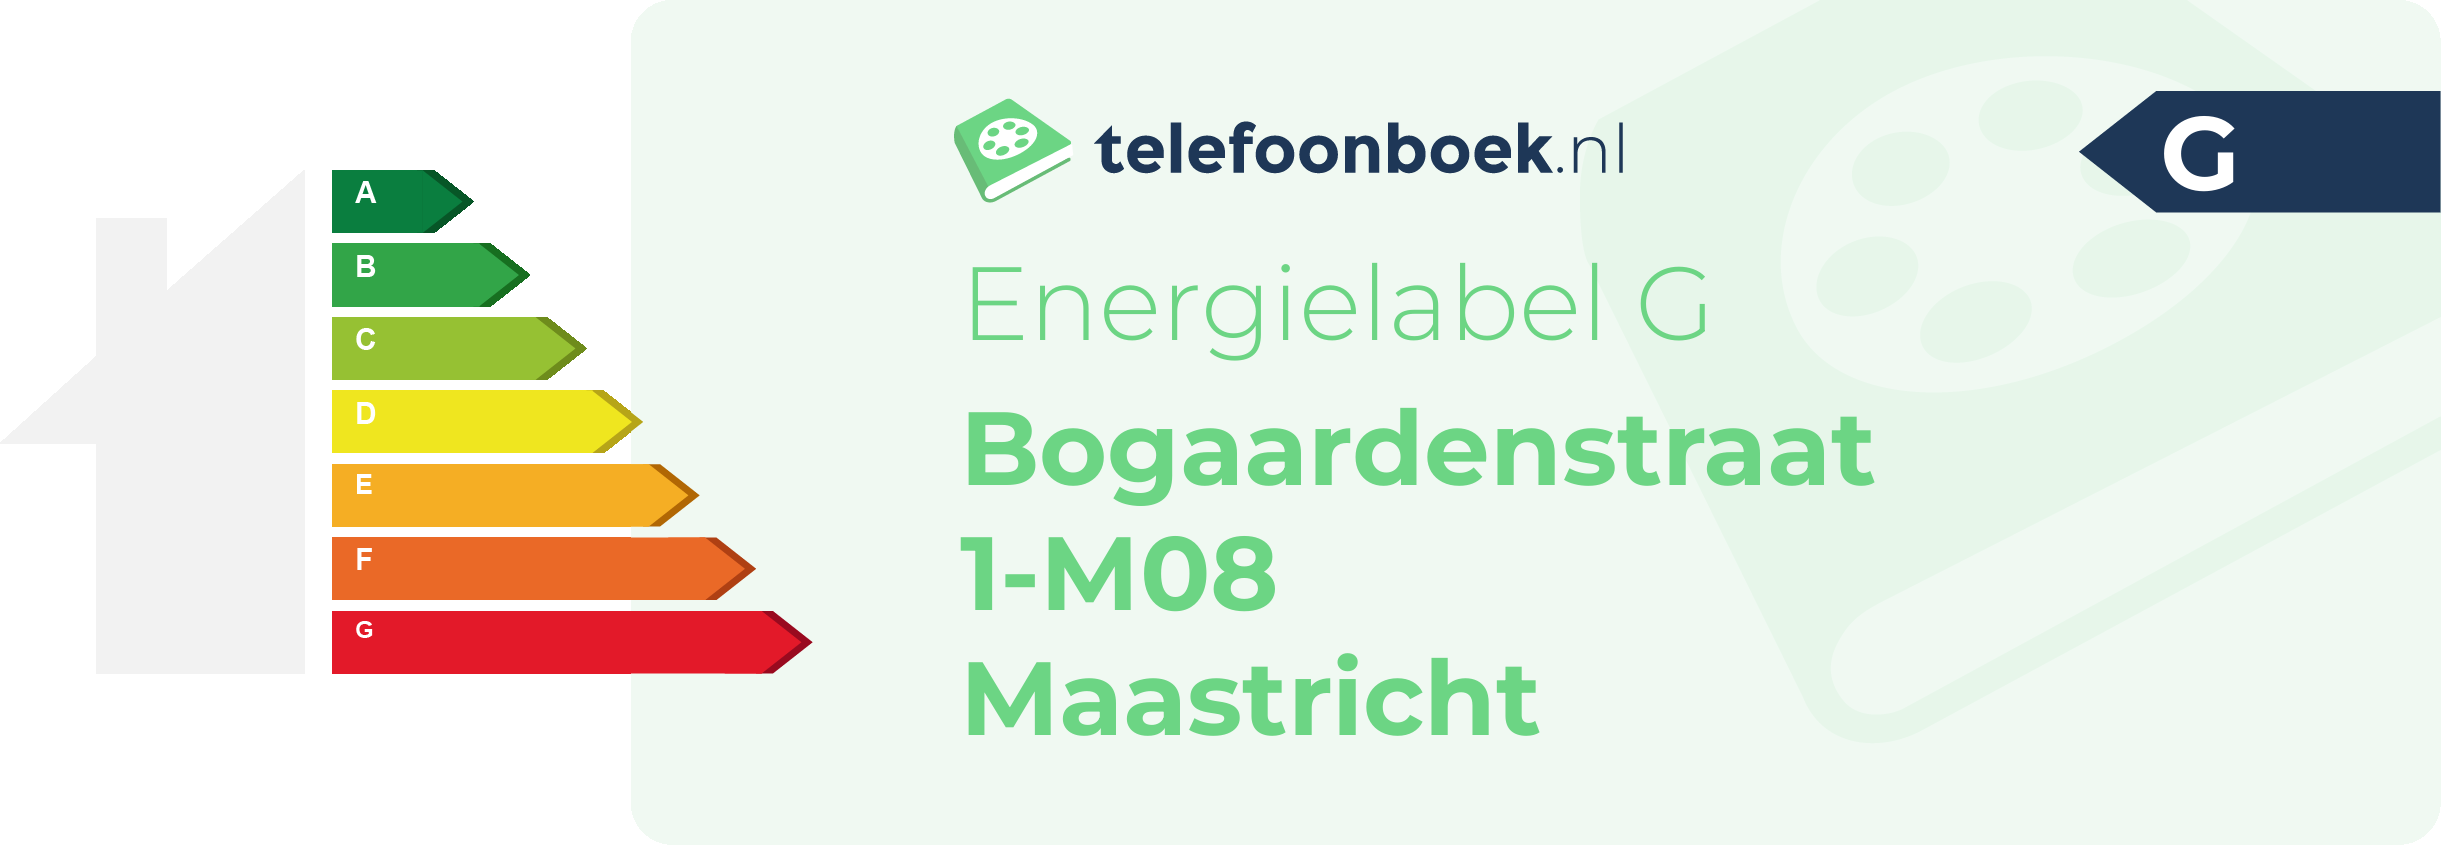 Energielabel Bogaardenstraat 1-M08 Maastricht